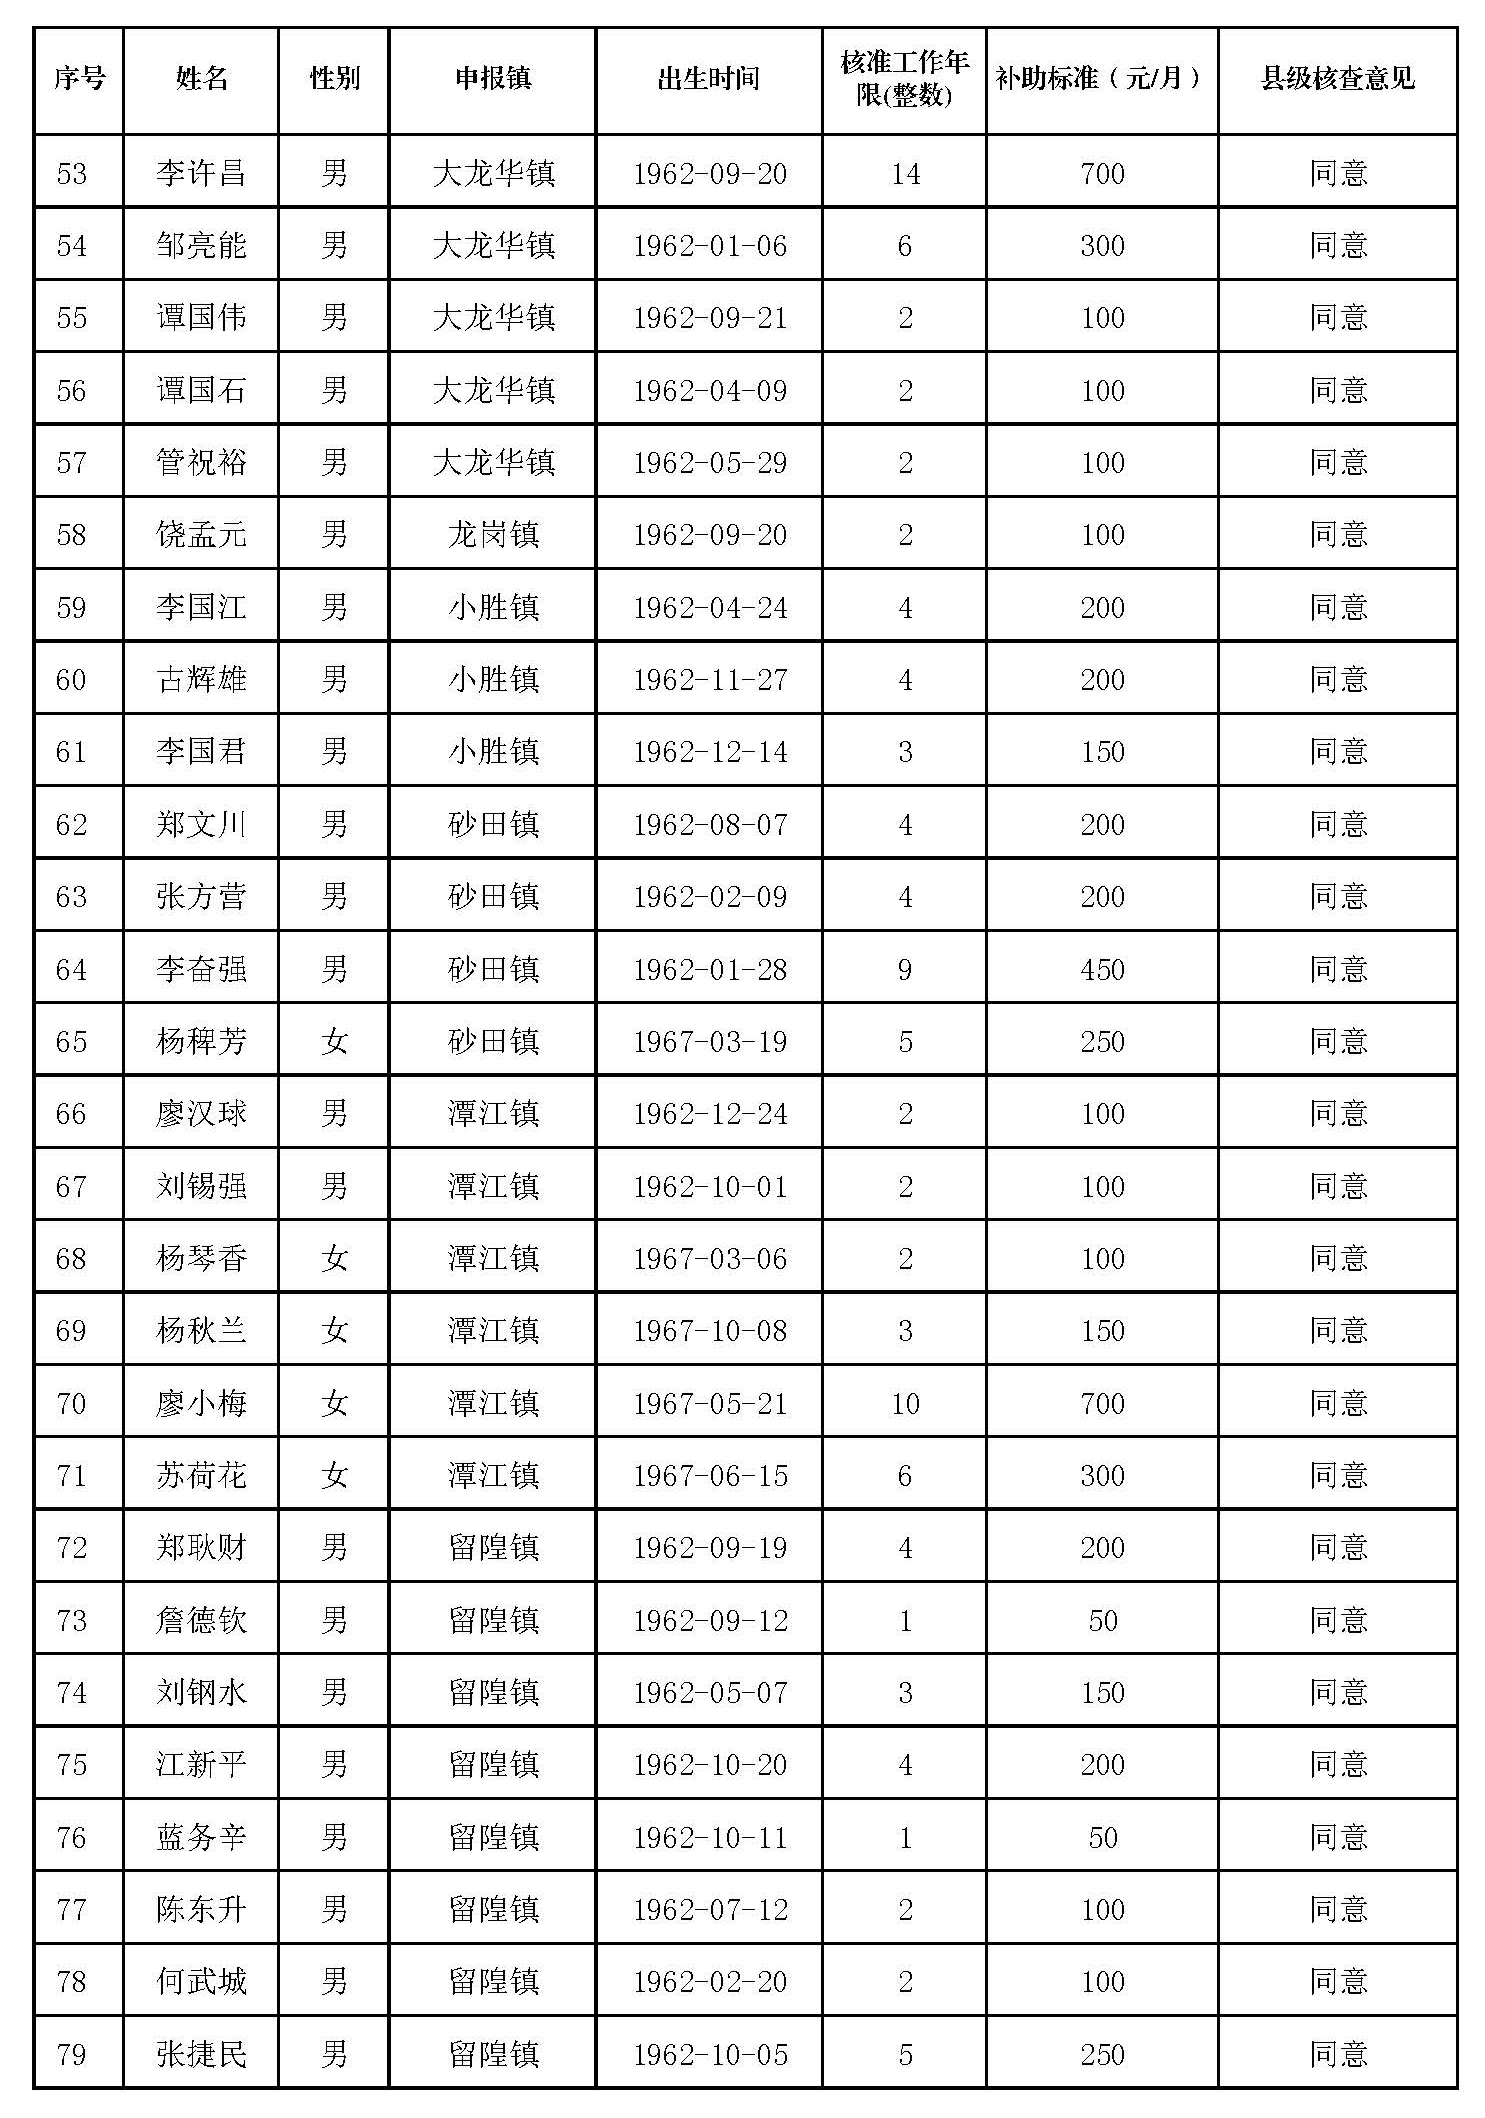 丰顺县原民办代课教师2022年度新增生活困难补助发放对象名册表_页面_3.jpg